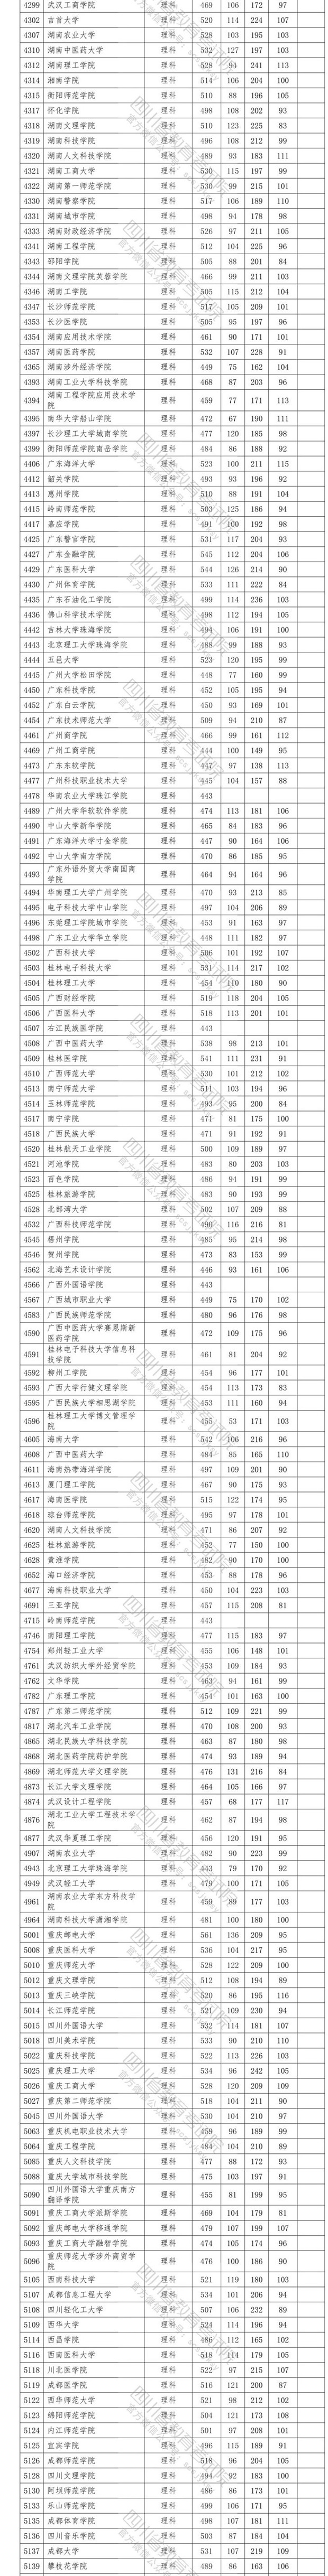 2020四川高考省内二本投档分数线及院校代码一览表